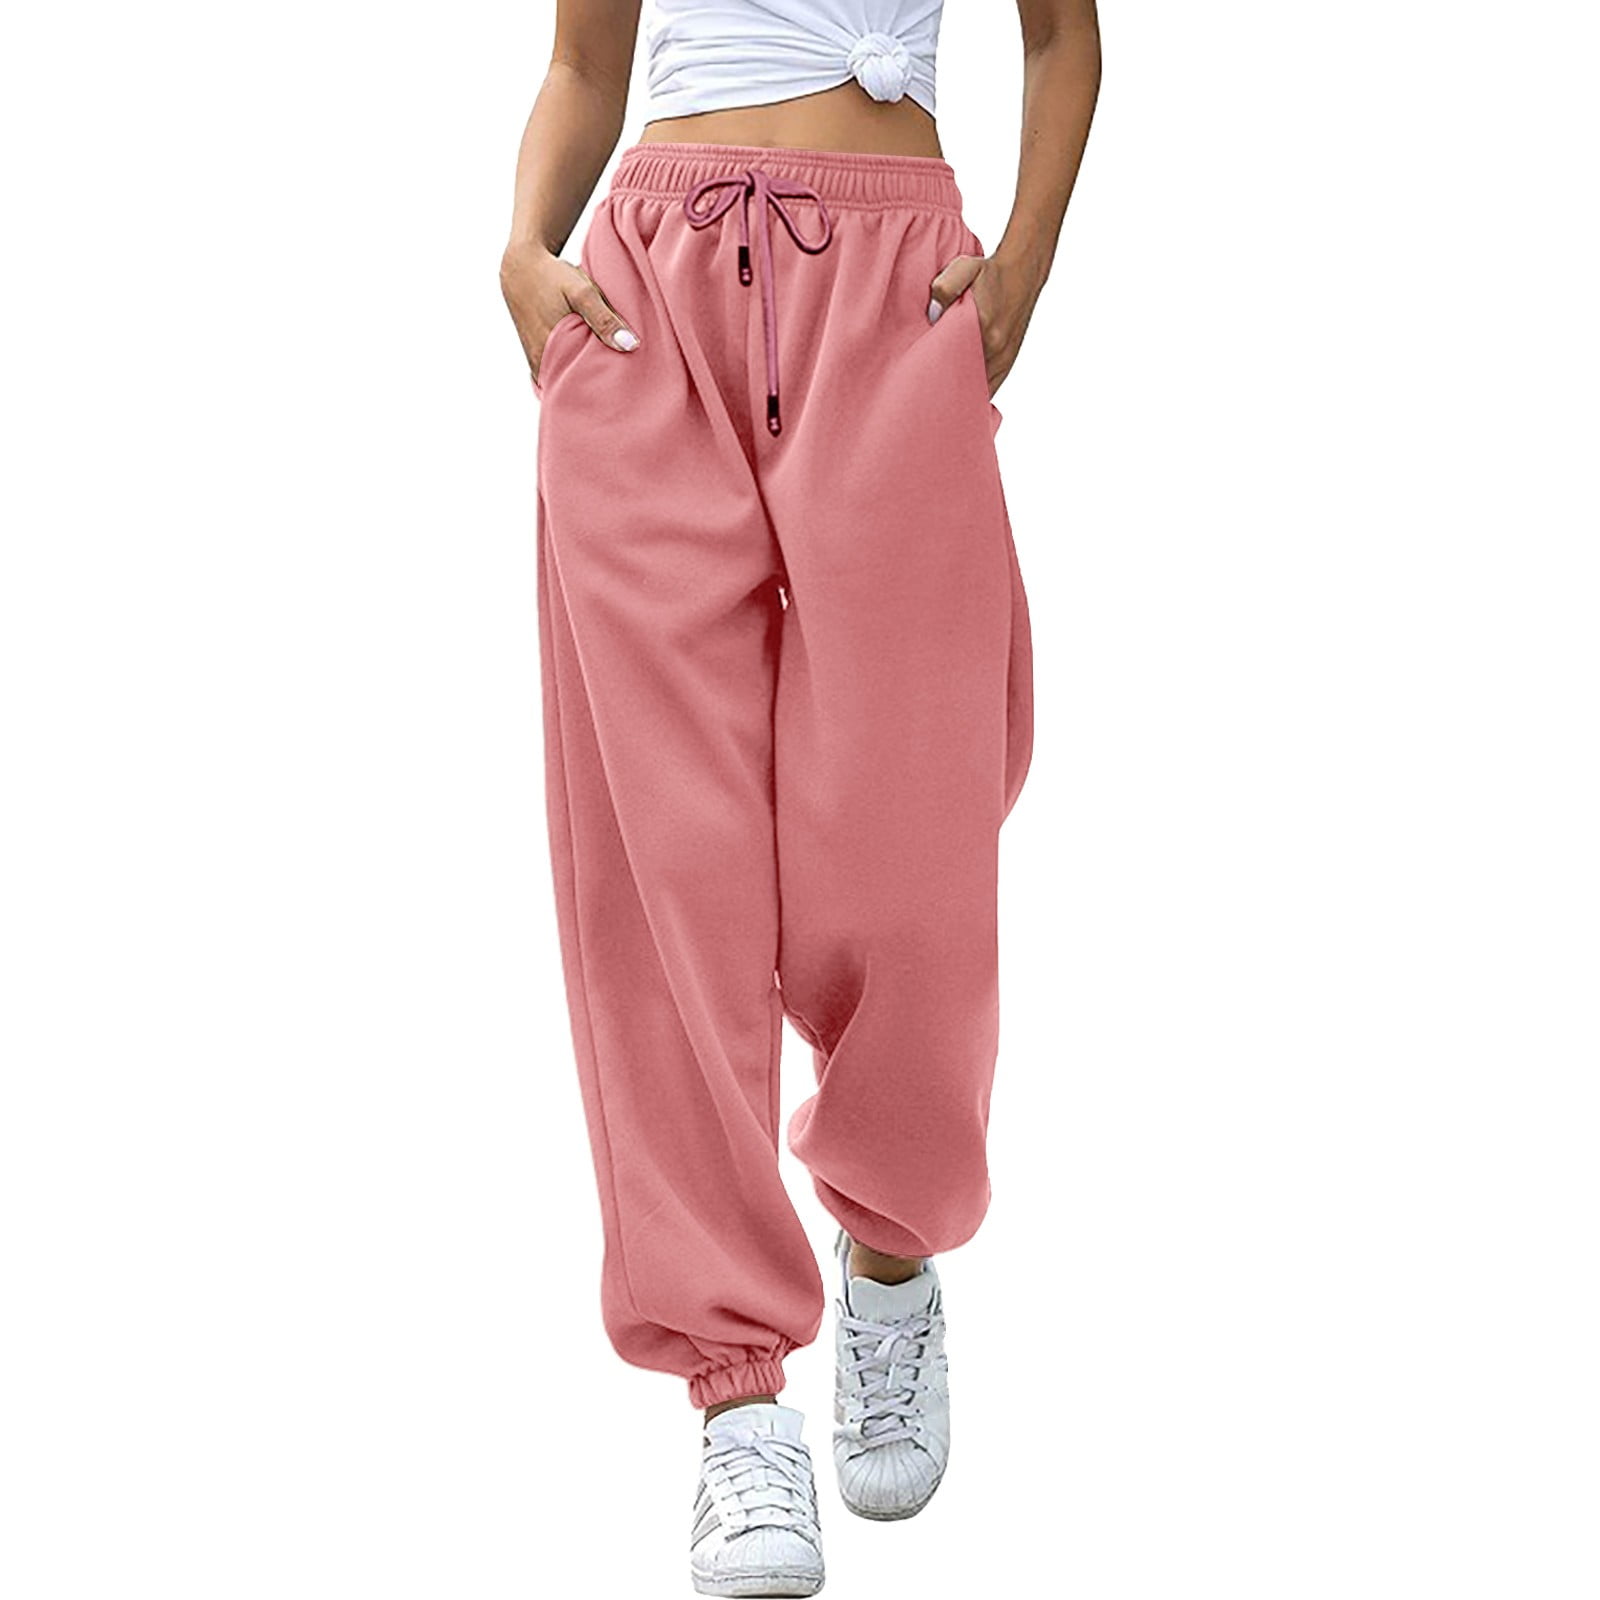 Colsie women pant  Pants for women, Clothes design, Women